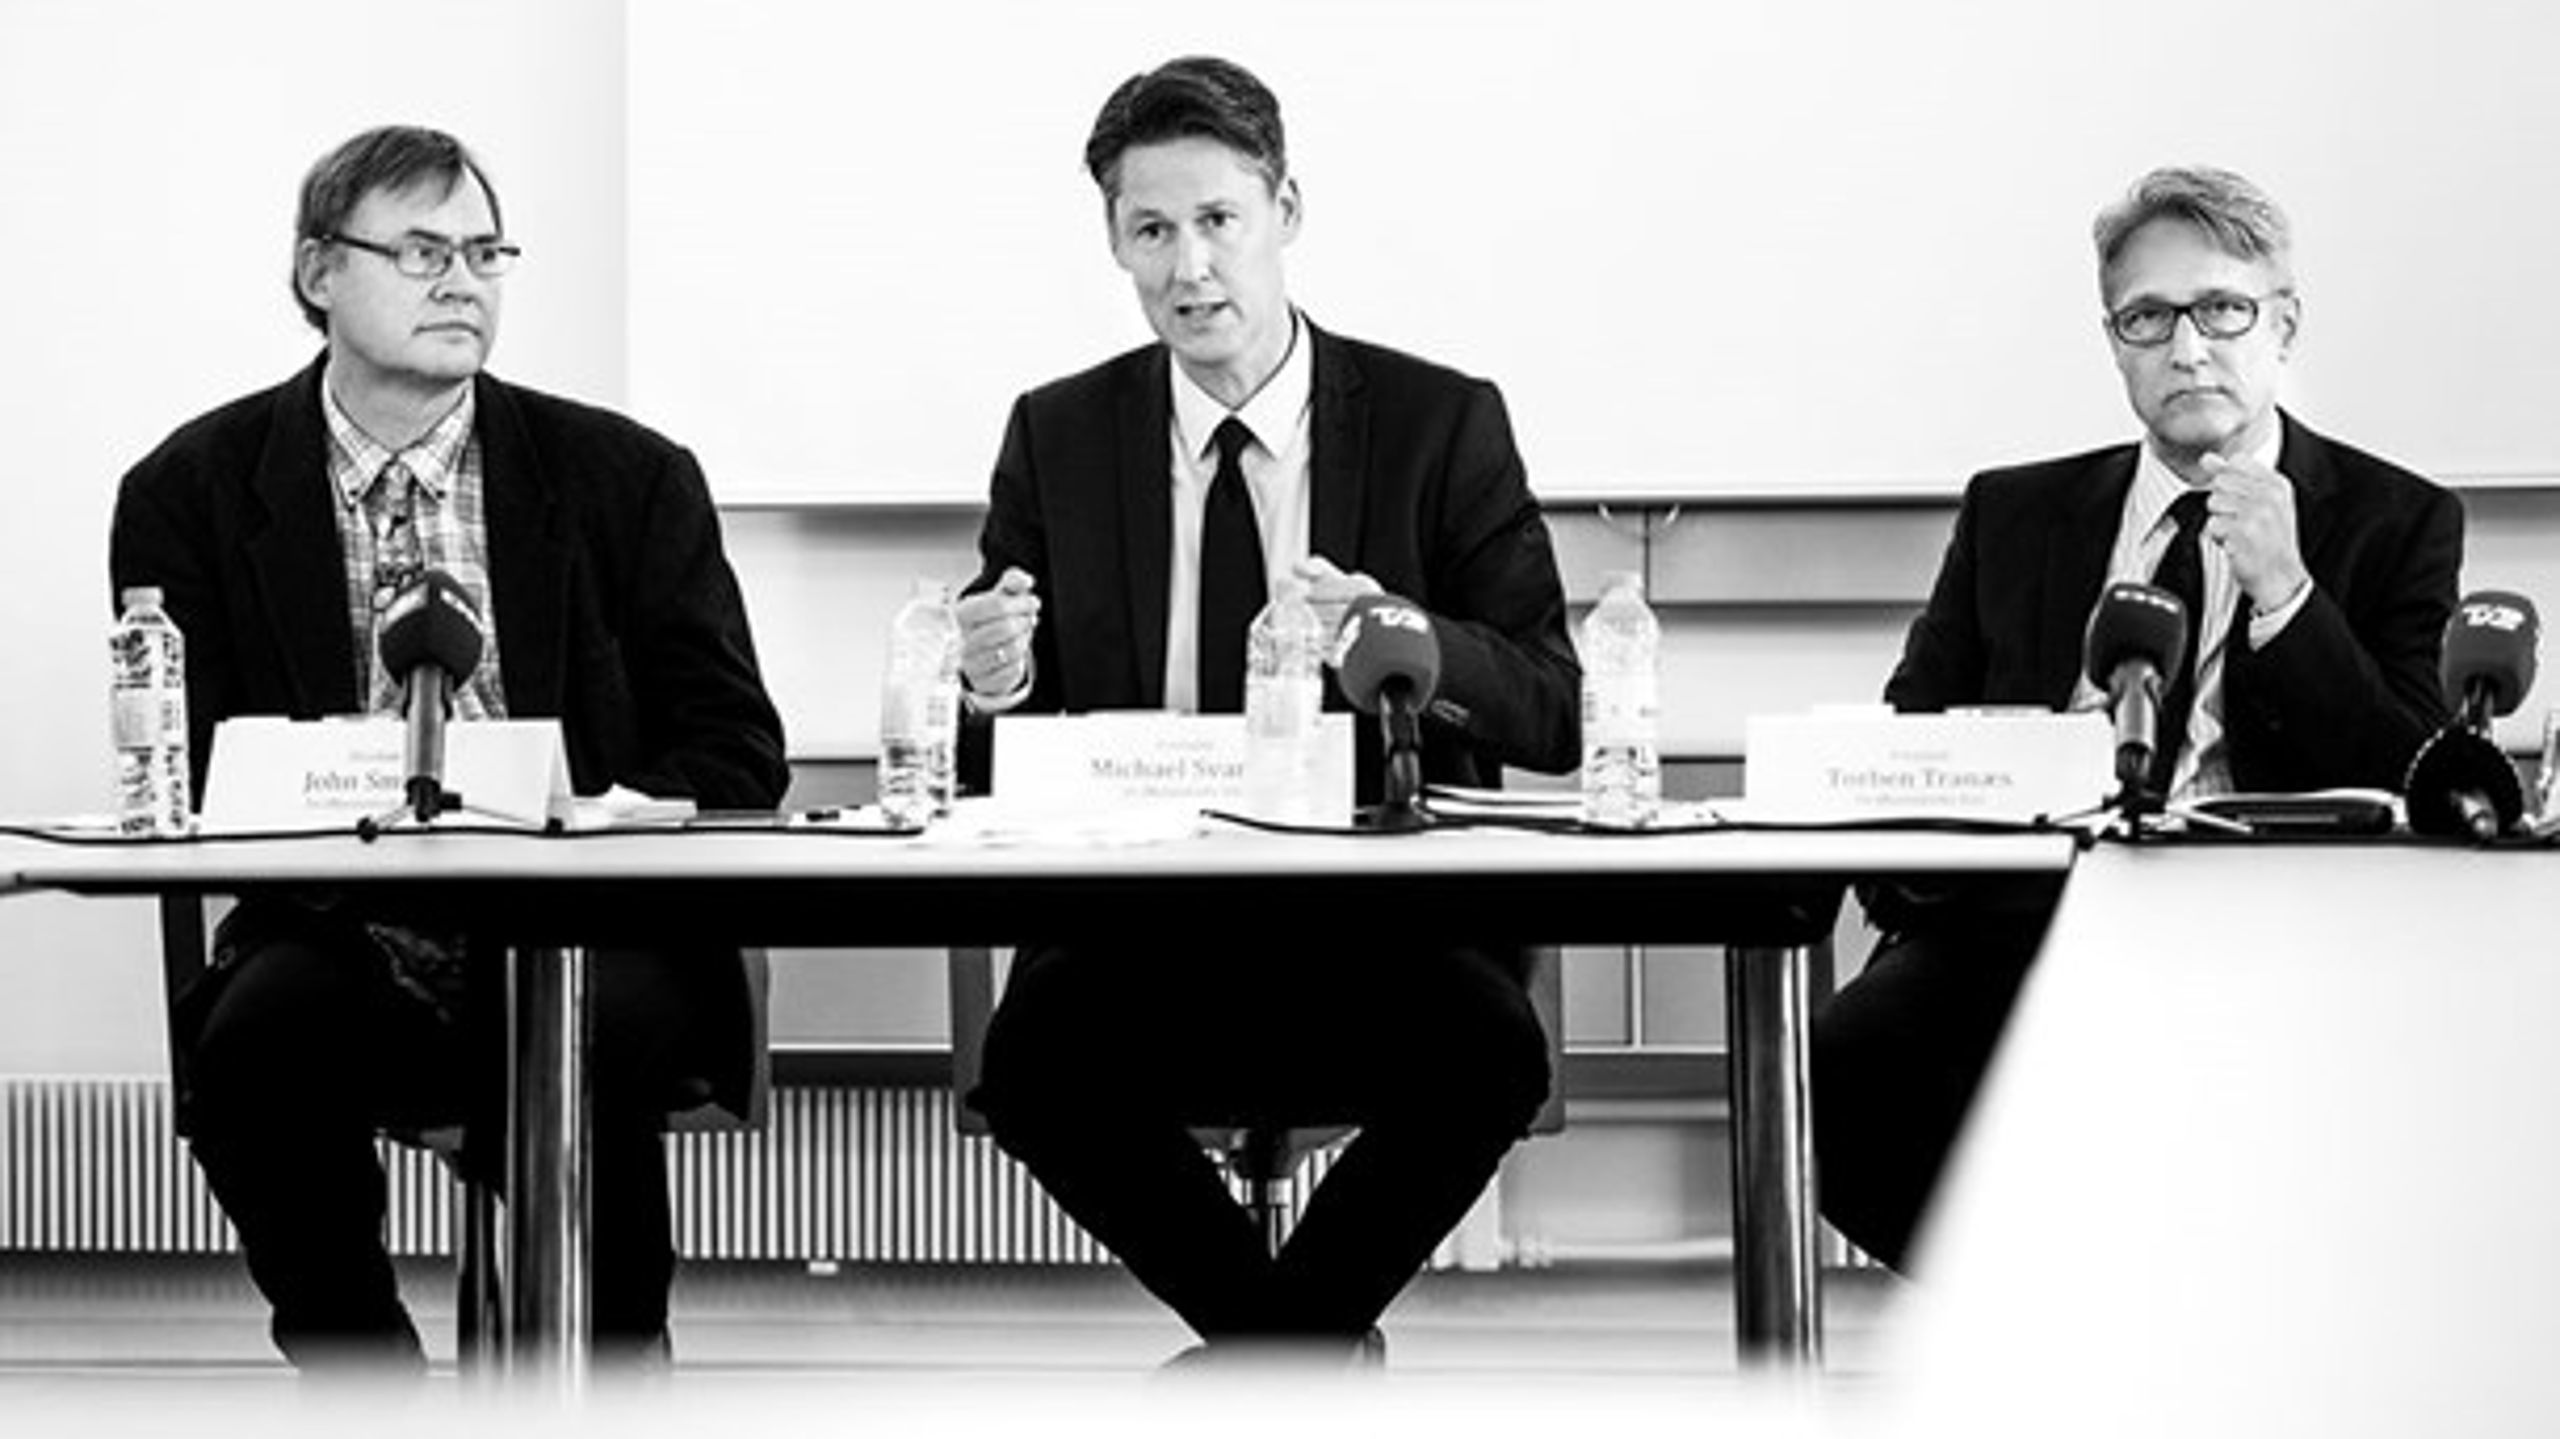 <b>VISMÆND</b>: Økonomisk Råd vurderer hvert år tilstanden for dansk økonomi. Her er det direktør John Smidt, formand Michael Svarer og formand Torben Tranæs ved præsentation af vismandsrapporten i 2016.